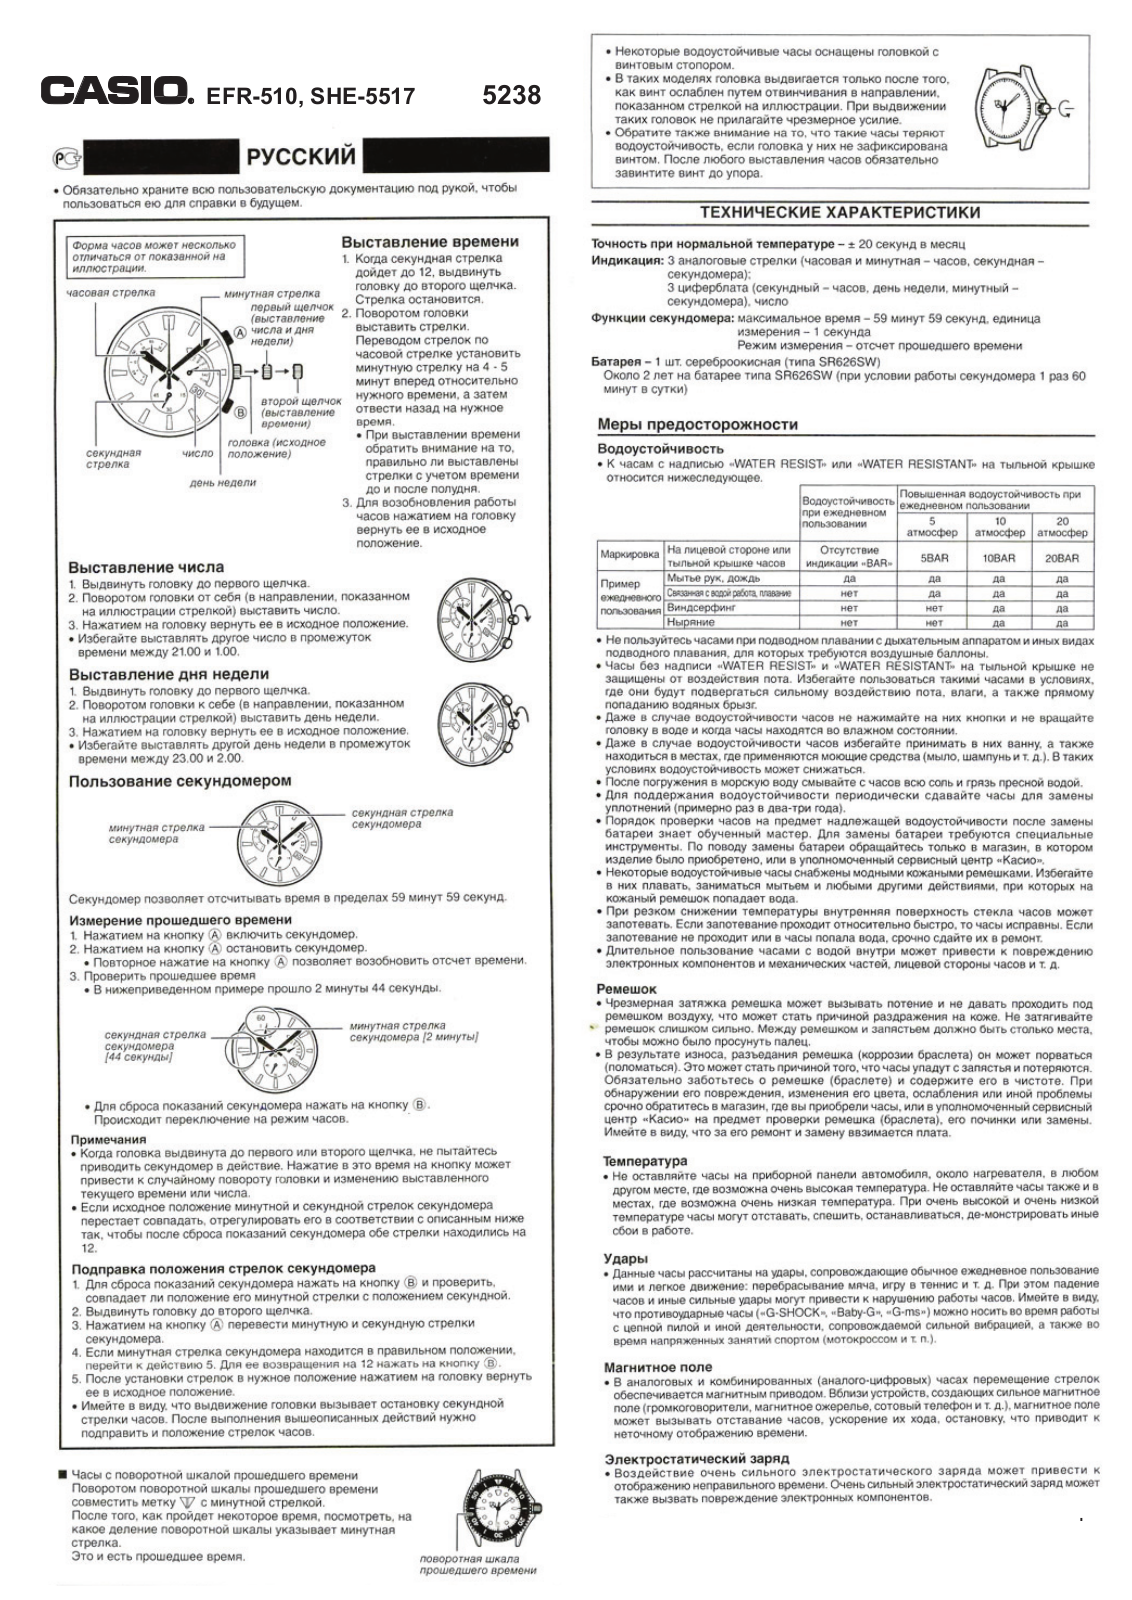 CASIO EFR-510 User Manual